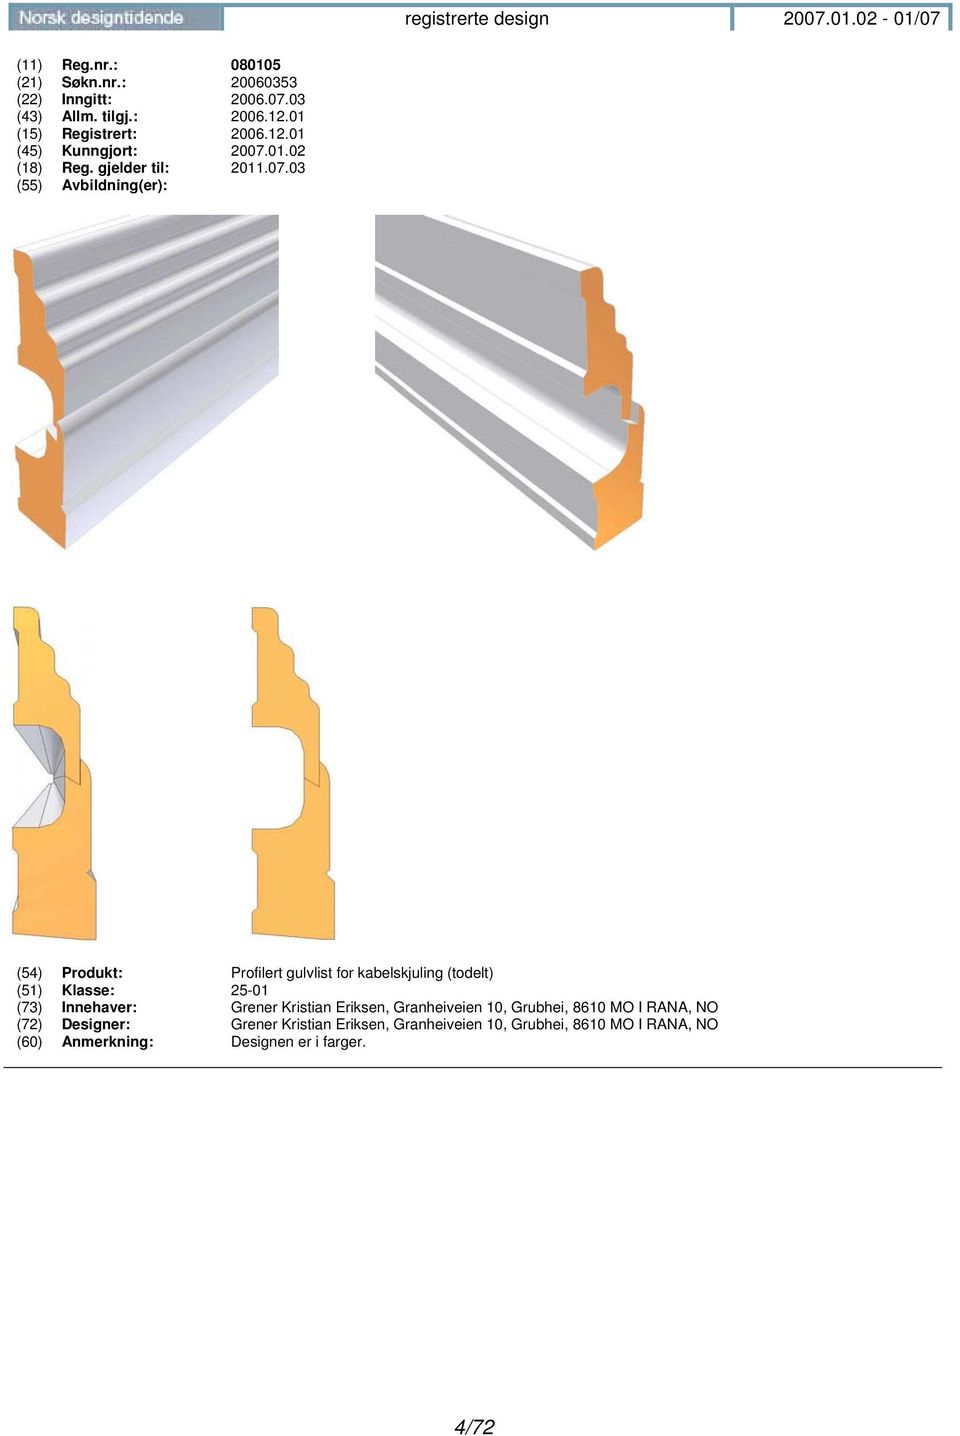 03 (54) Produkt: Profilert gulvlist for kabelskjuling (todelt) (51) Klasse: 25-01 (73) Innehaver: Grener Kristian